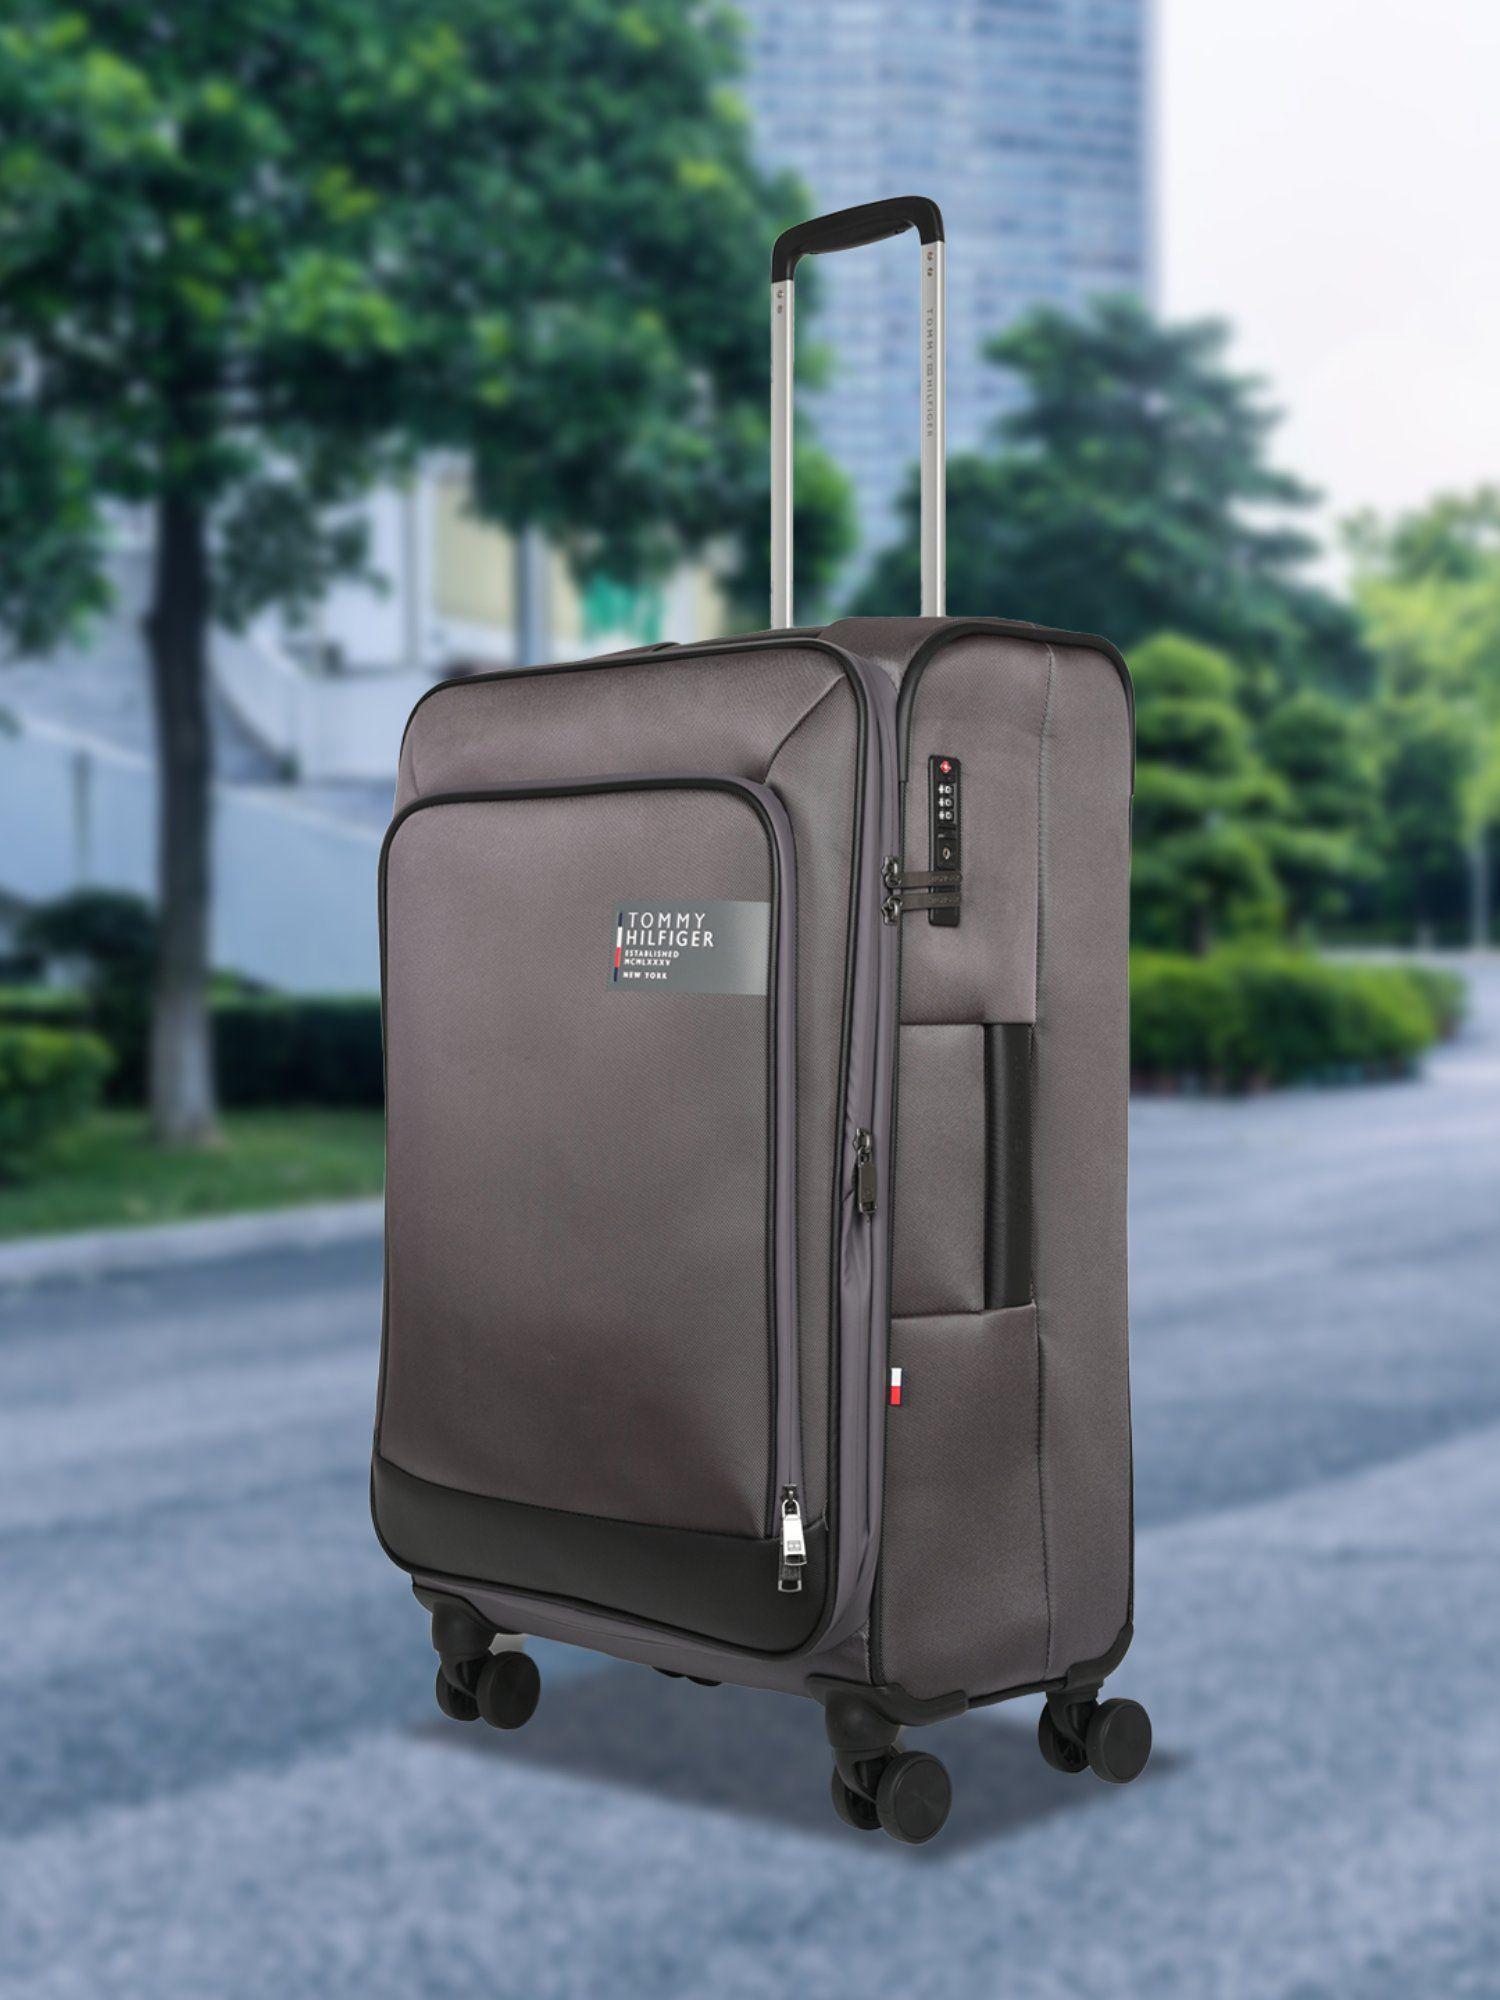 westfield unisex polyester soft luggage grey 55cm cabin trolley tsa lock